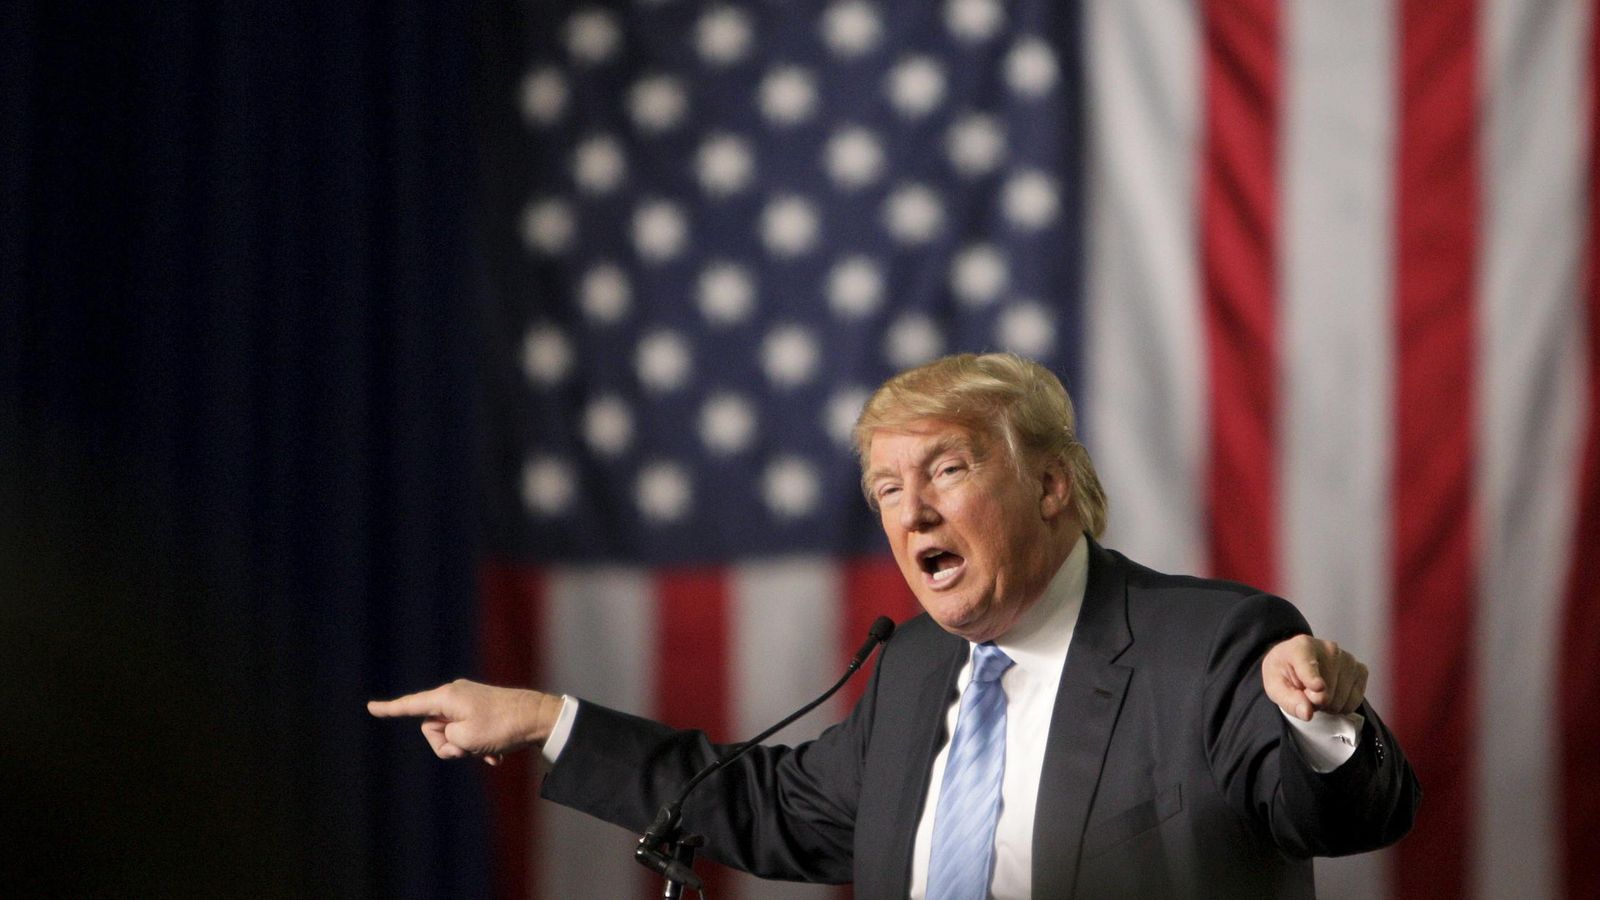 Foto: El candidato republicano Donald Trump durante un acto electoral en Columbia, el 23 de noviembre de 2013 (Reuters).